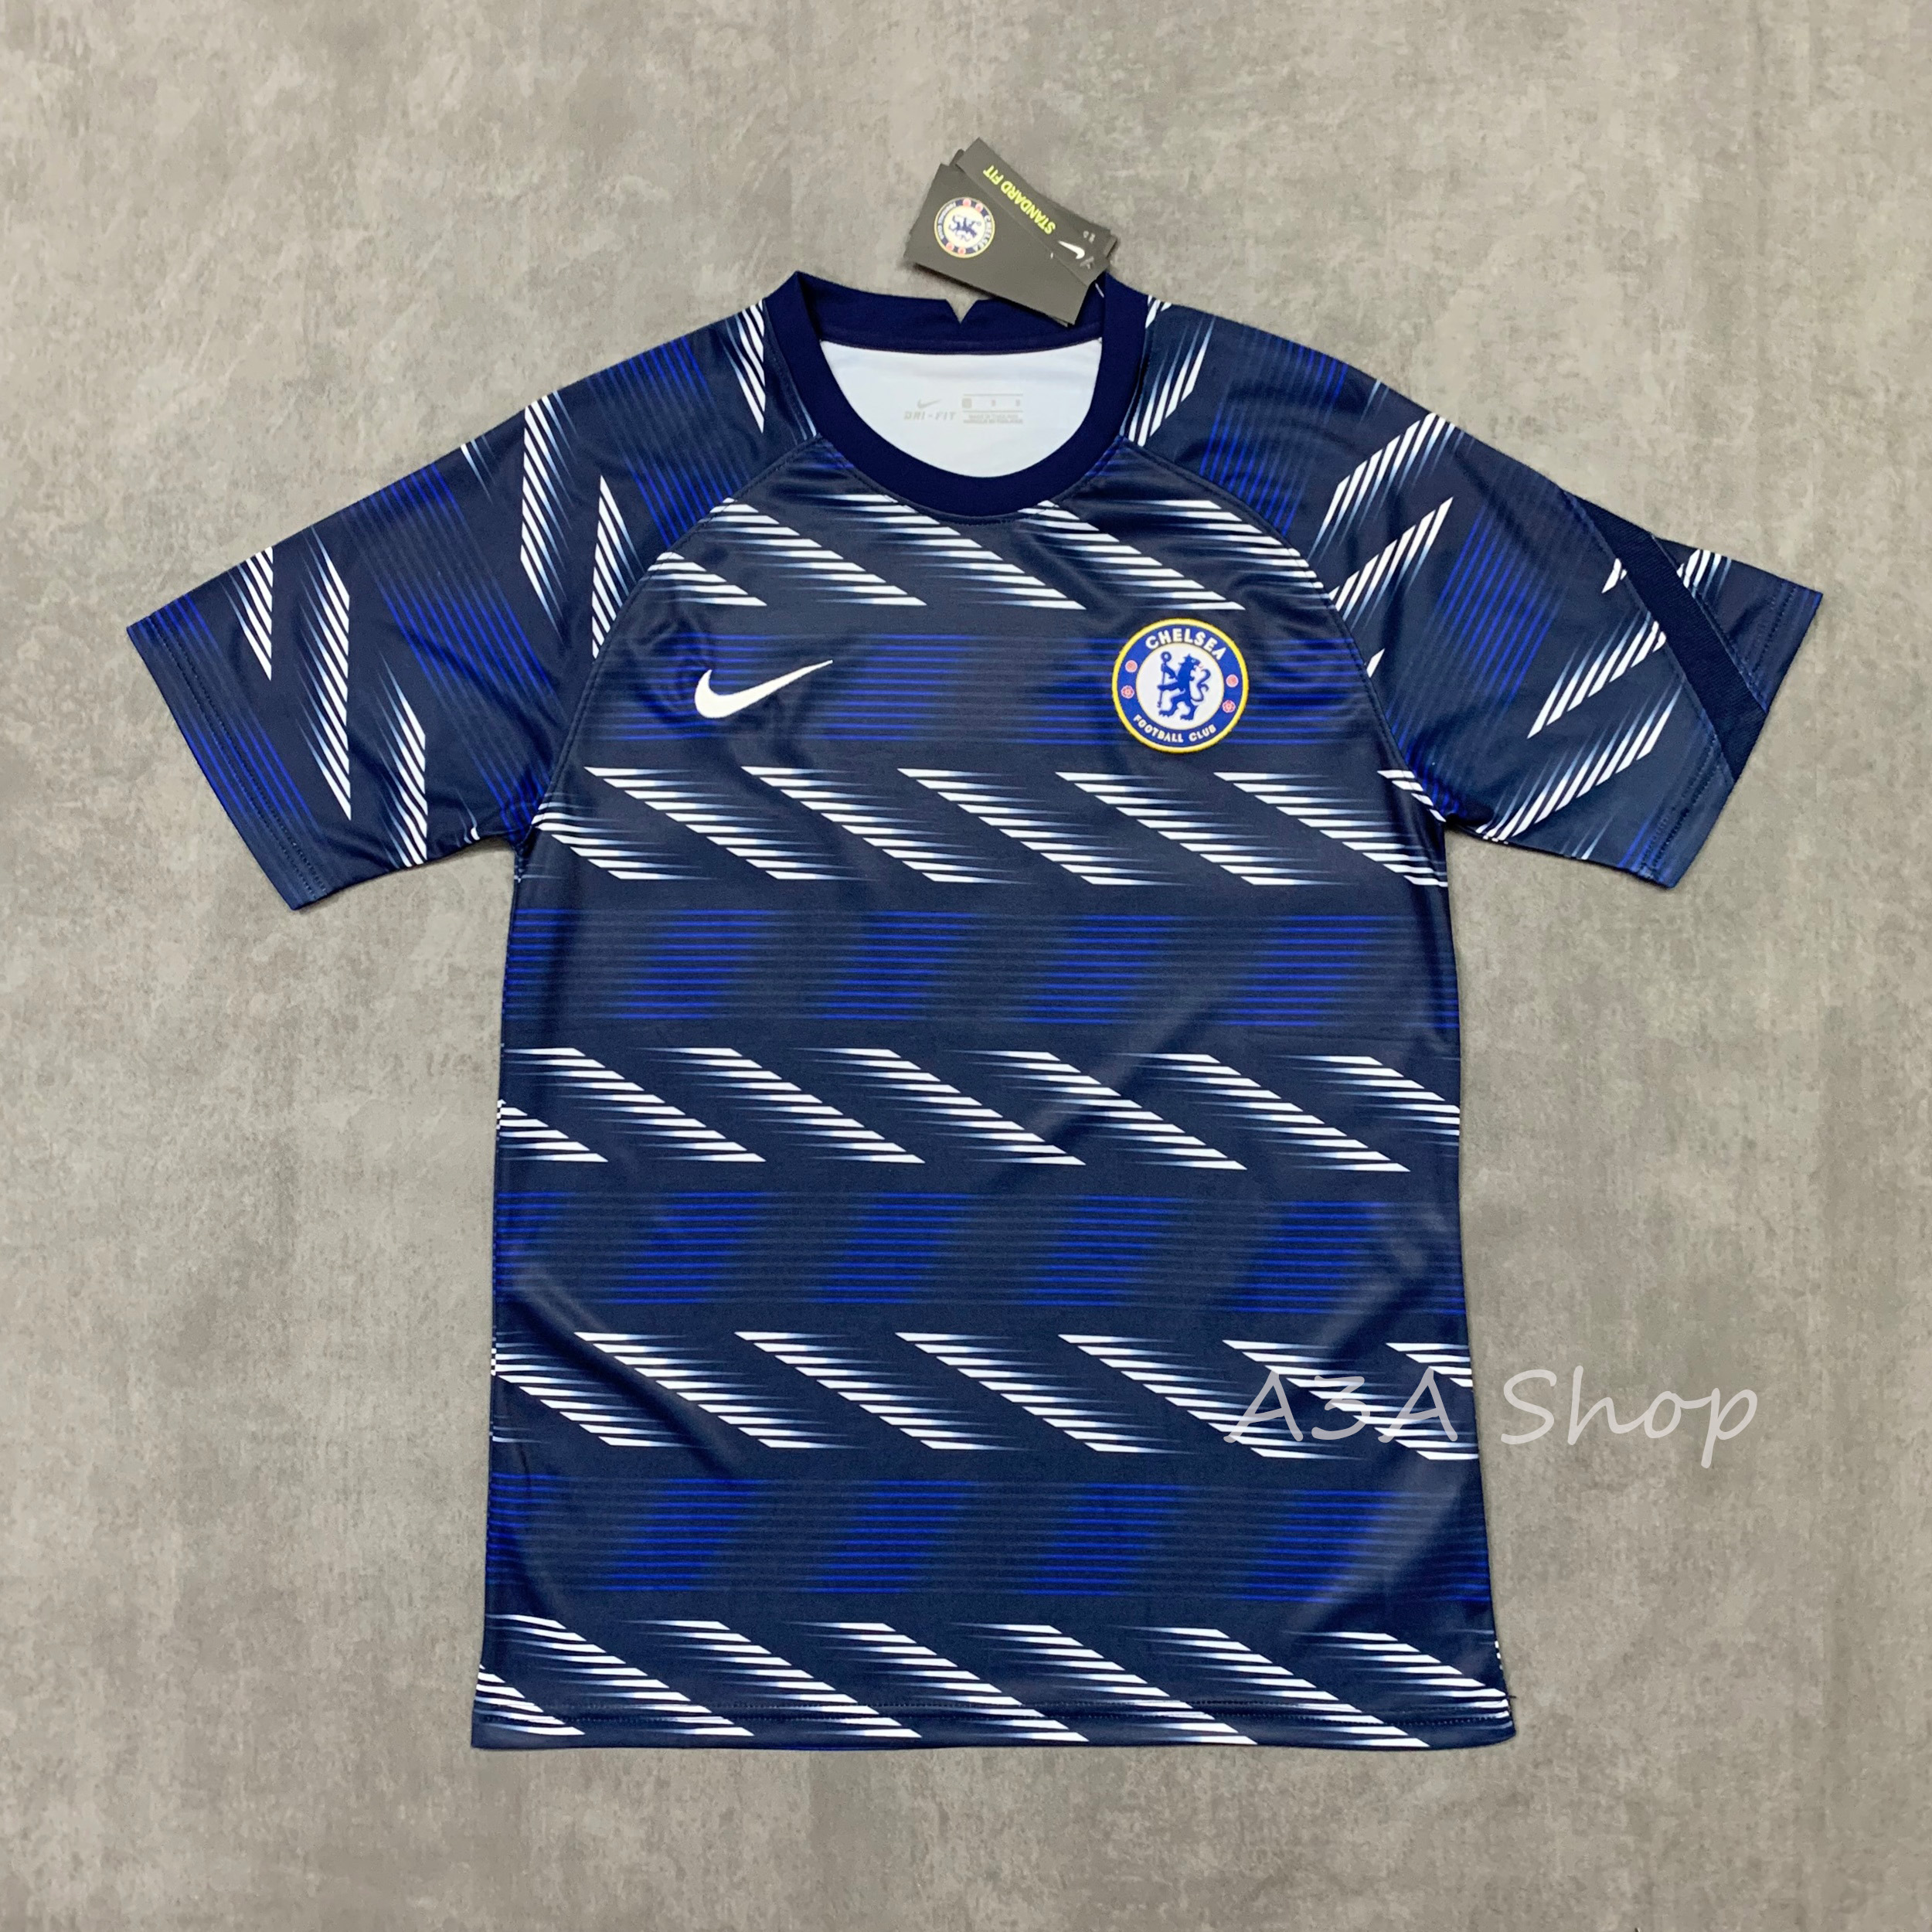 ใหม่!! Chelsea Pre Match Training 2021/22 เสื้อบอล เสื้อฟุตบอลชาย เสื้อบอลชาย เสื้อกีฬาชาย2021 เสื้อฝึกซ้อม ทีมเชลซี เสื้อซ้อมกีฬาฤดูกาล 2021/22 เกรด AAA